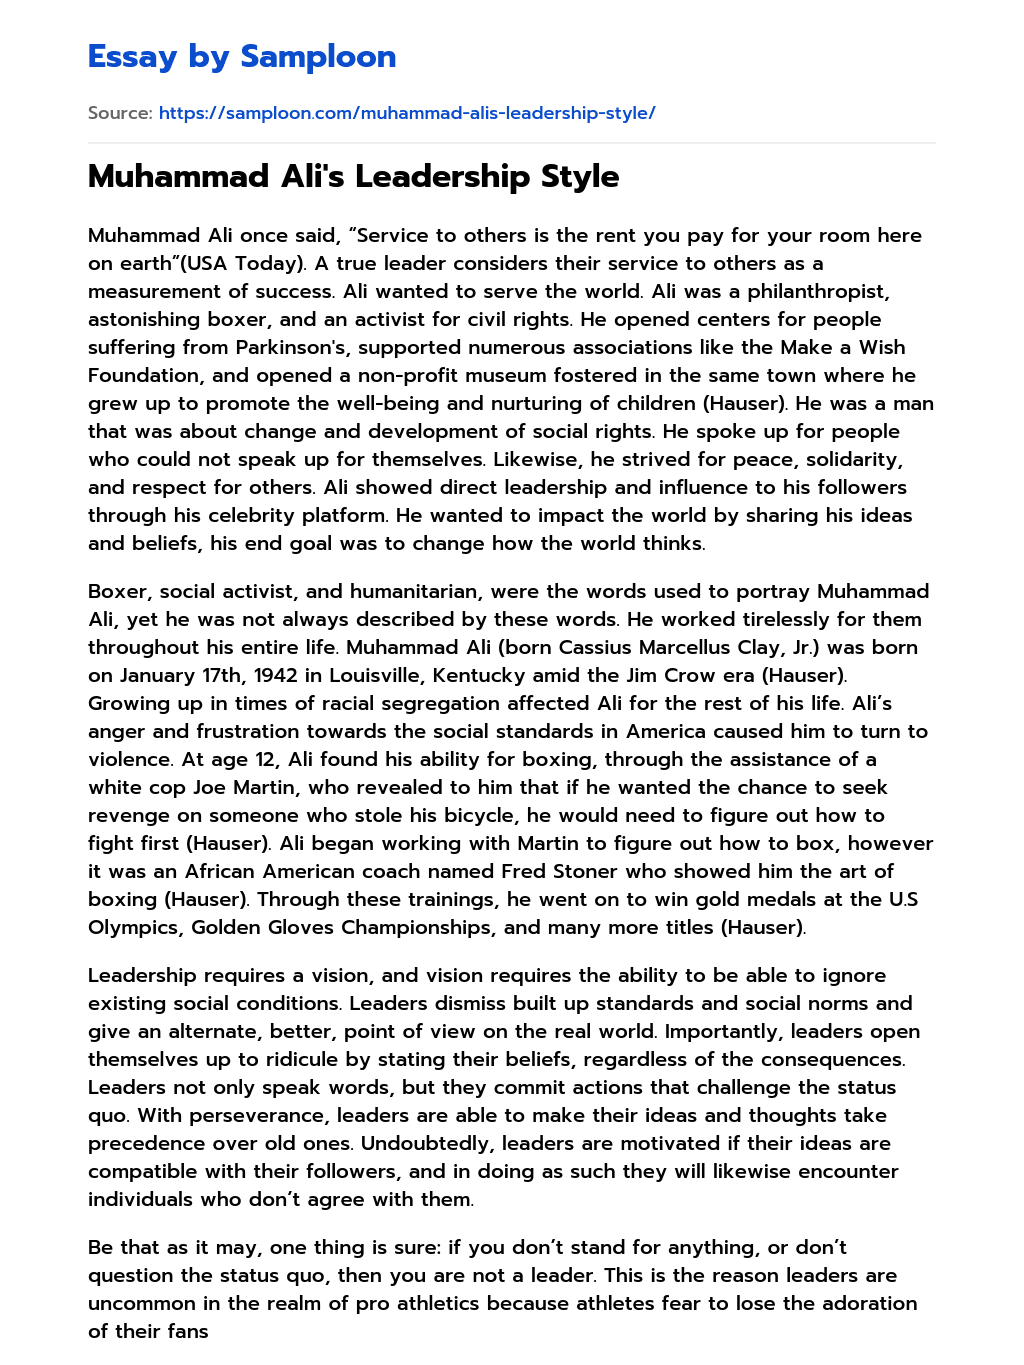 Muhammad Ali’s Leadership Style Personal Essay essay